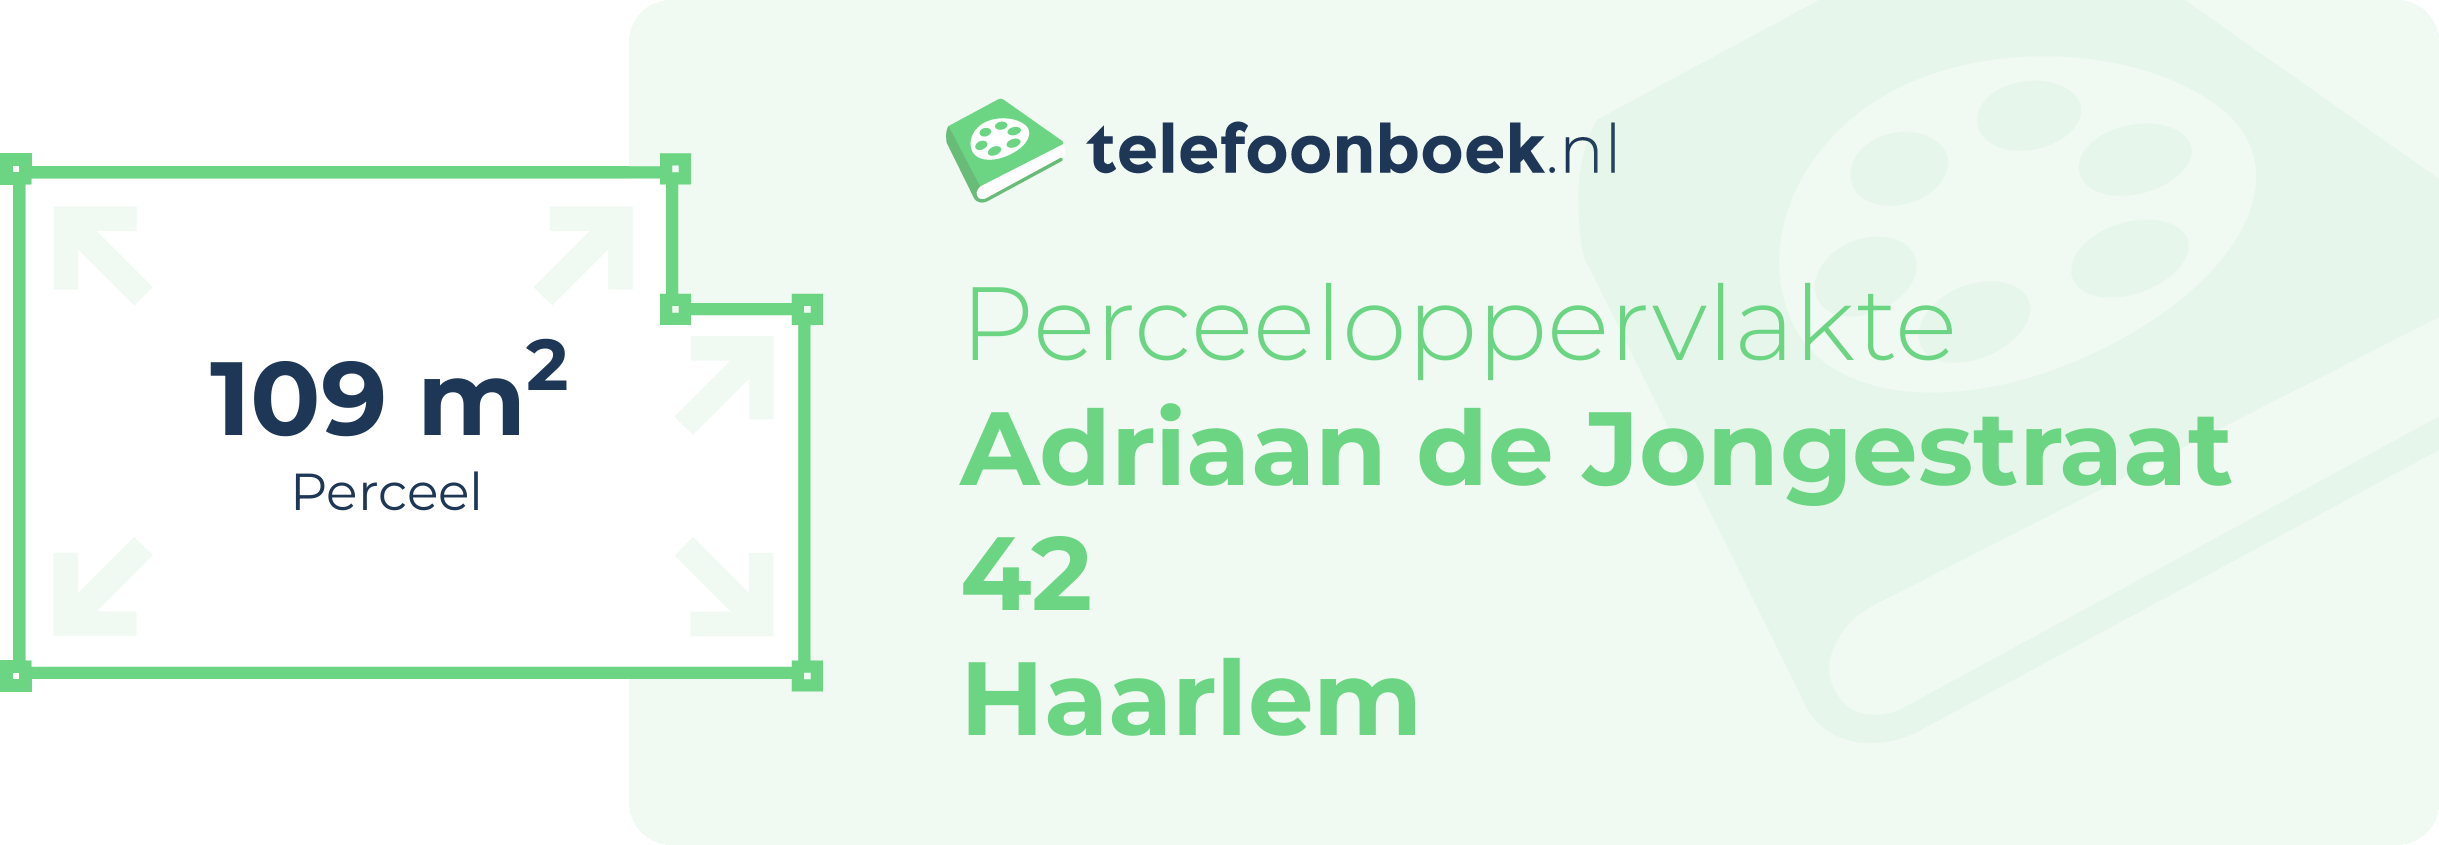 Perceeloppervlakte Adriaan De Jongestraat 42 Haarlem